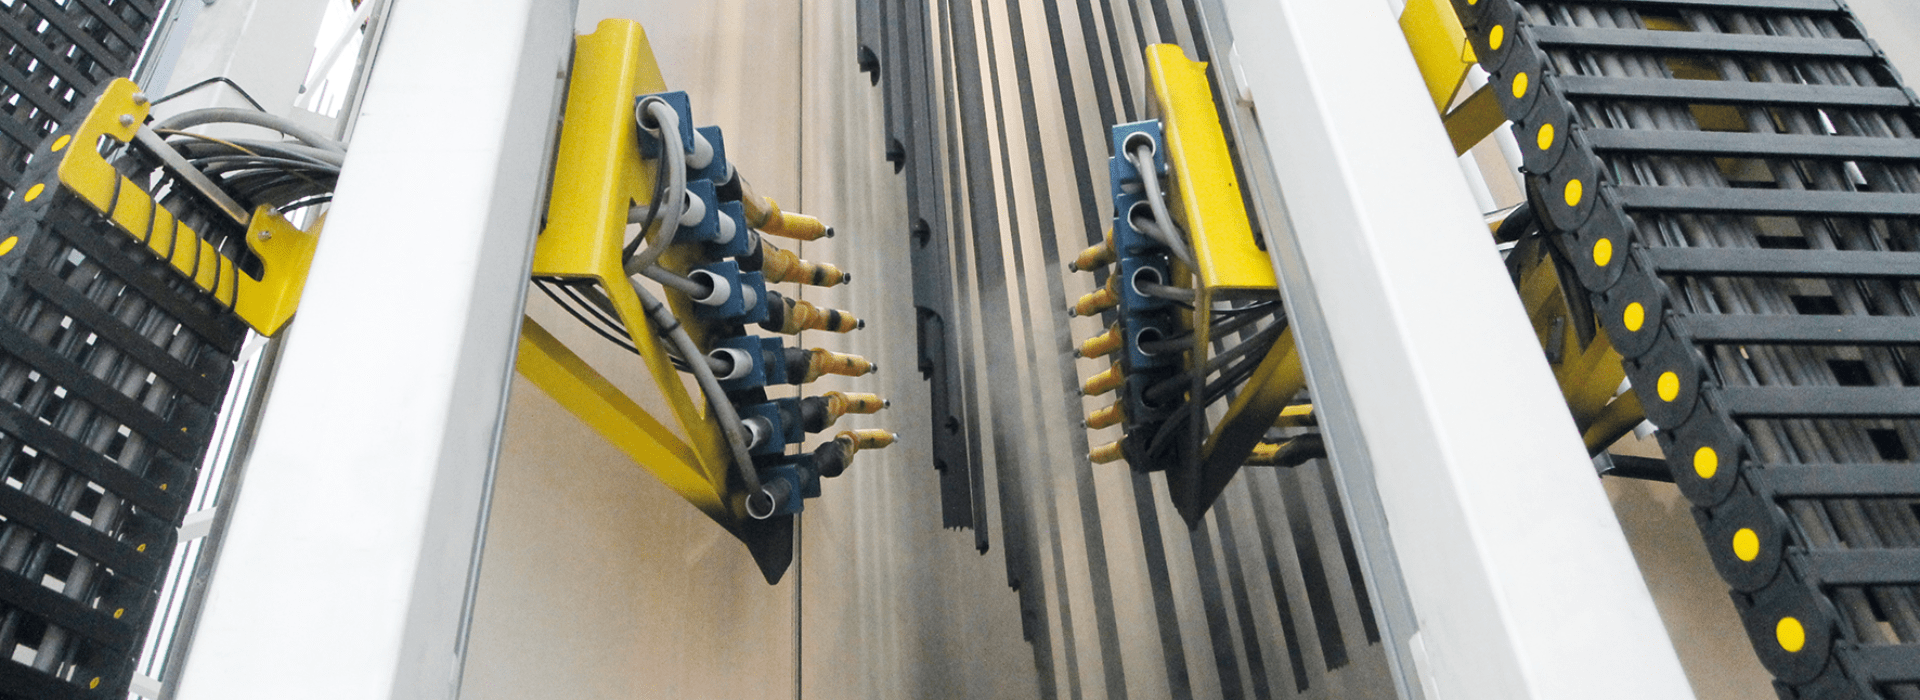 Exlabesa instala una nueva planta de lacado vertical de última generación